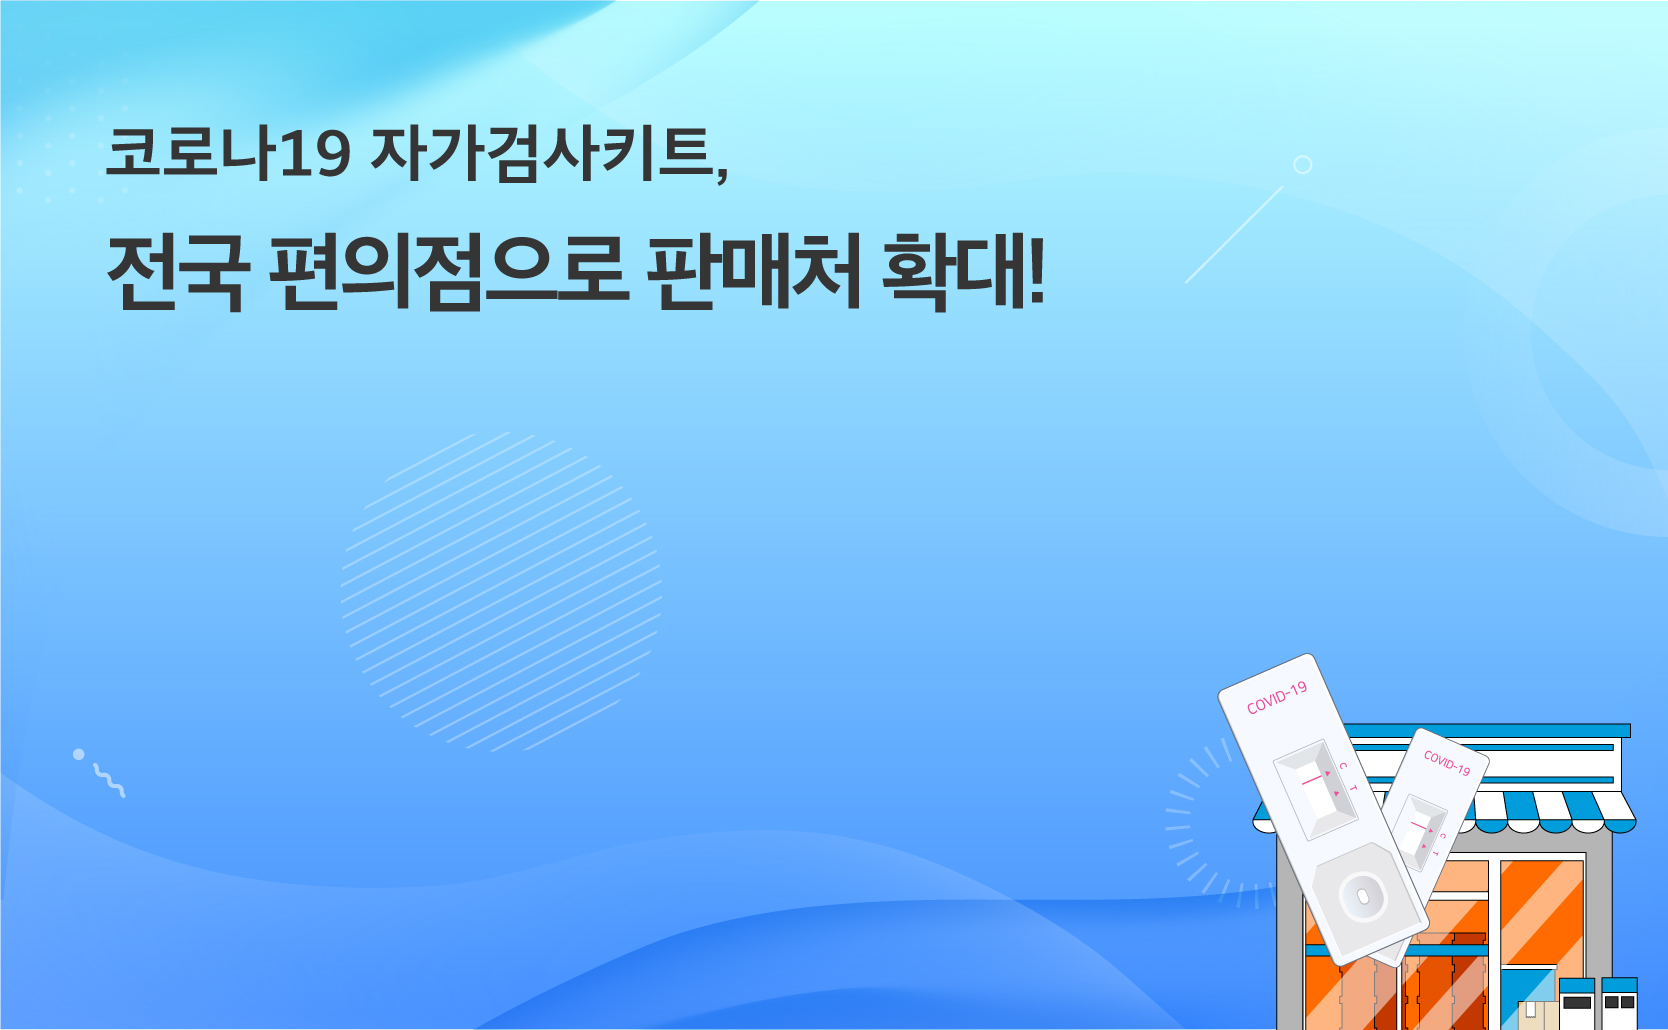 코로나19 자가검사키트 전국 편의점으로 판매처 확대!